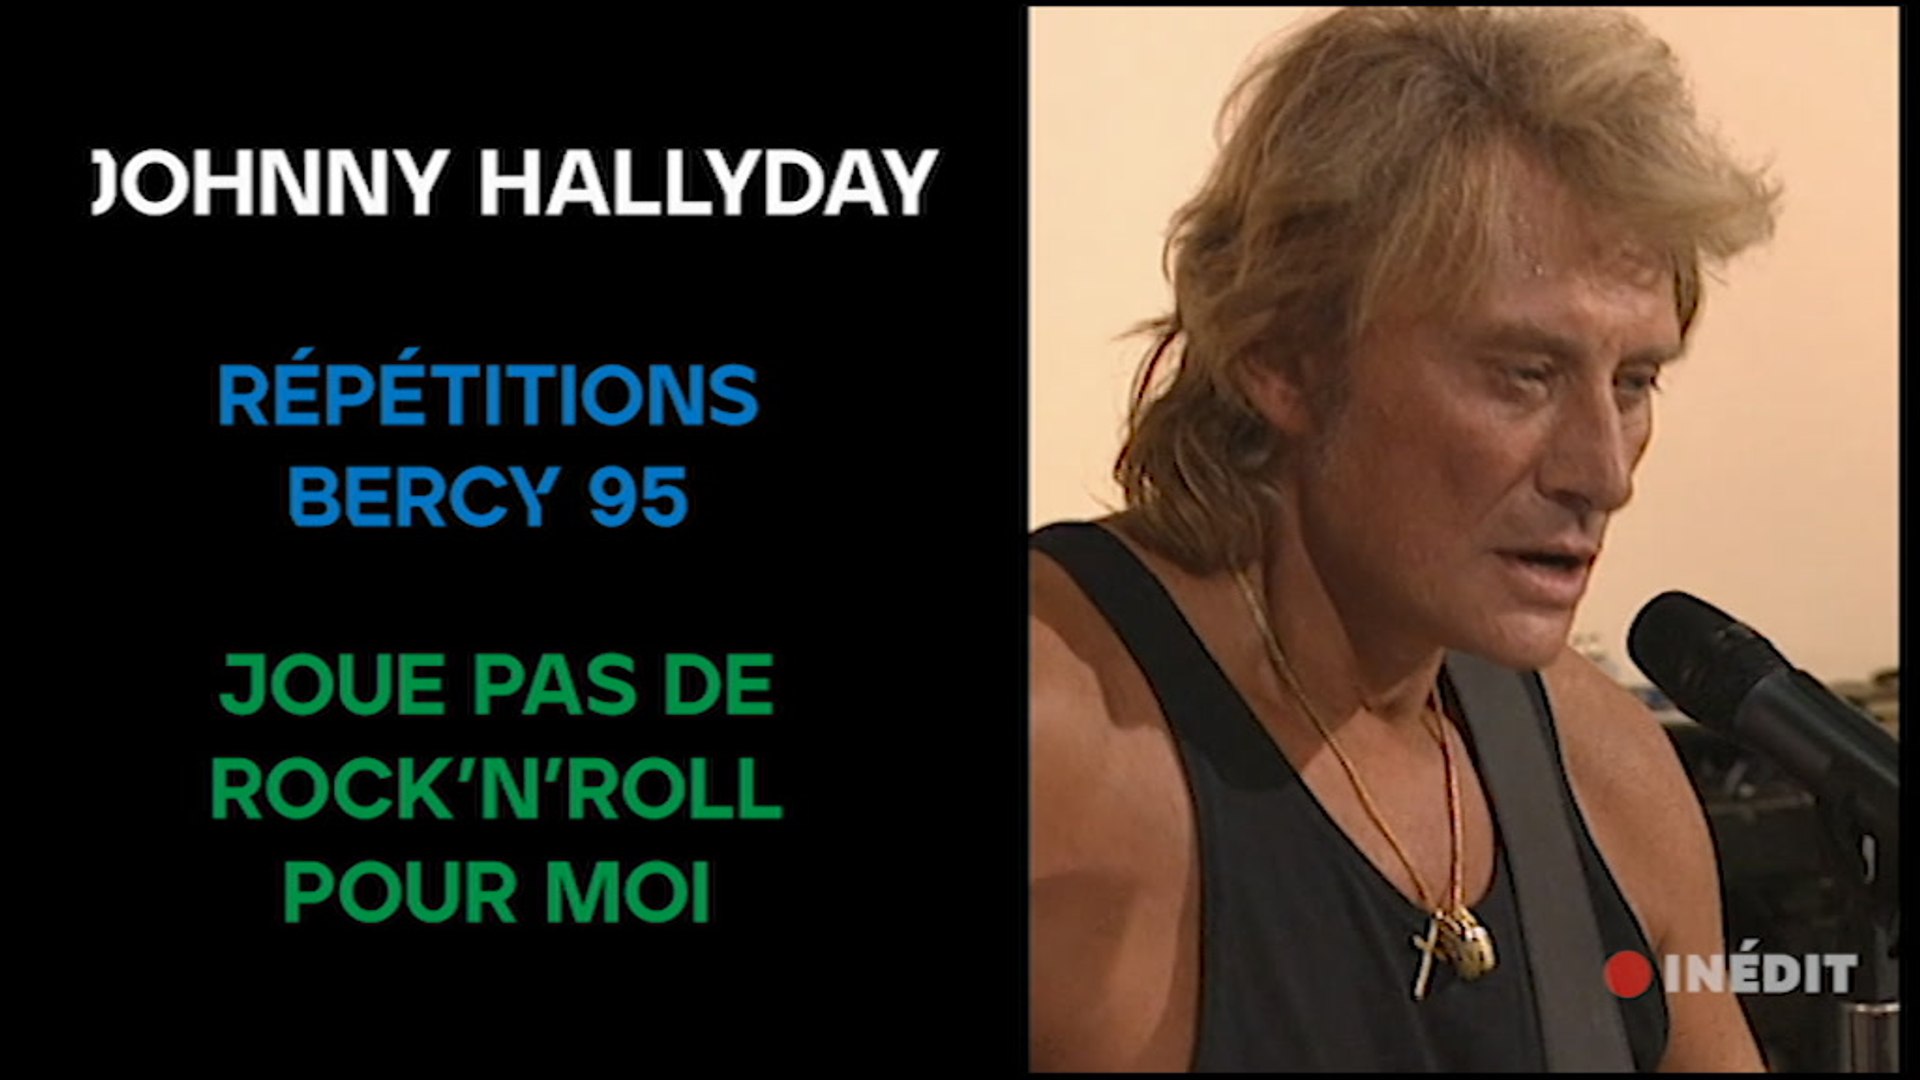 Johnny Hallyday - Répétitions - Joue pas de rock'n'roll pour moi (Bercy 95)  - video Dailymotion